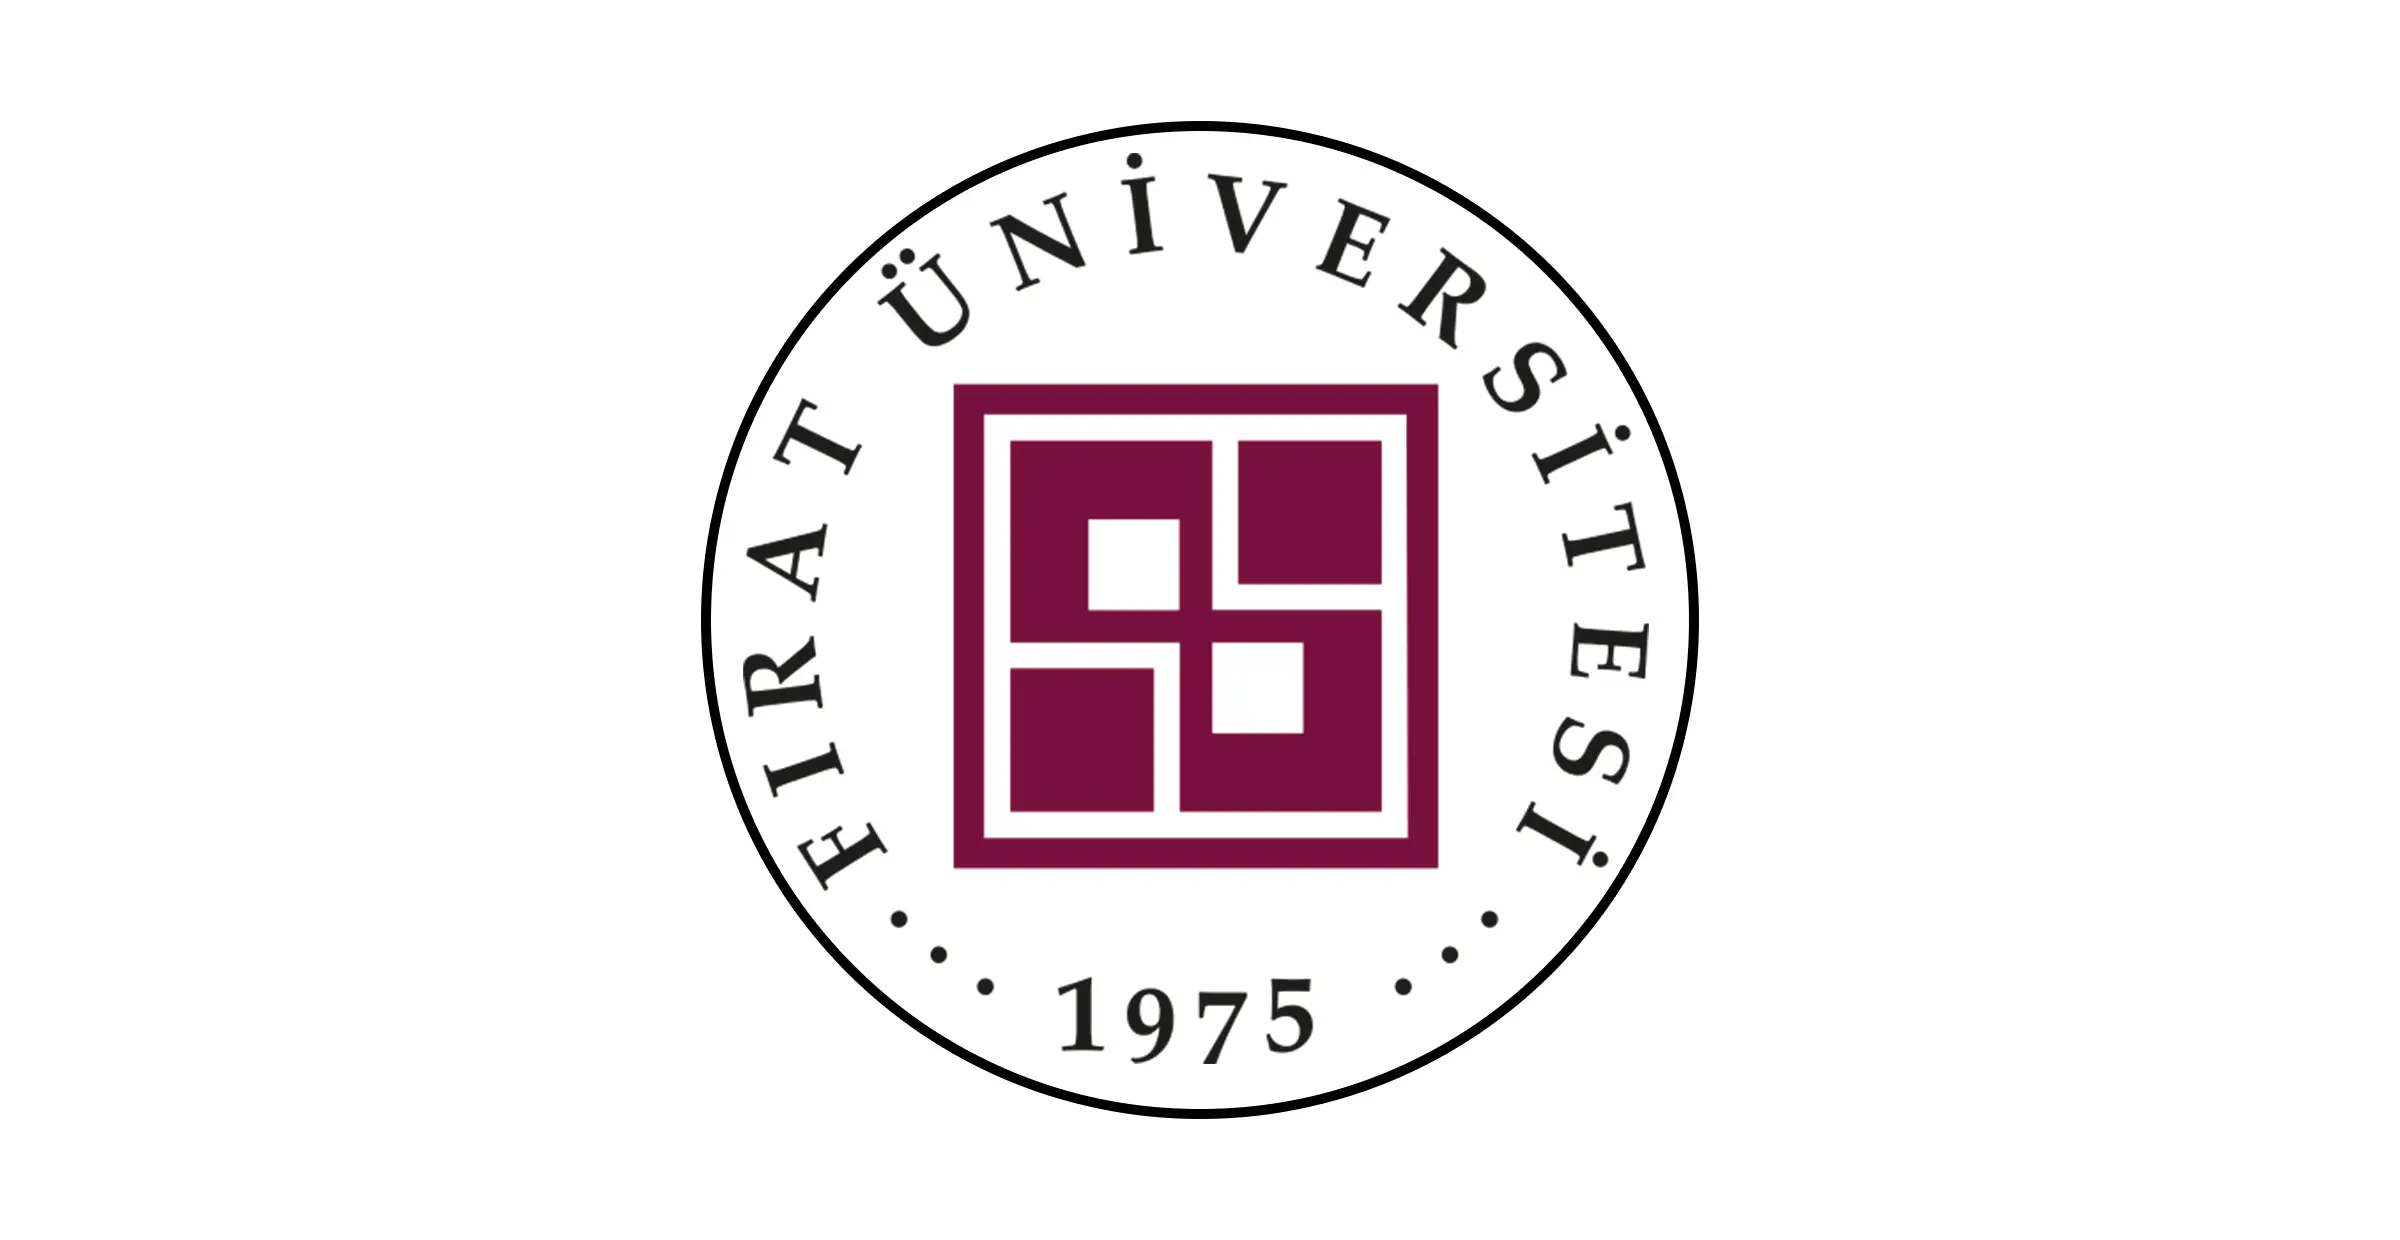 بدأت جامعة فرات fırat üniversitesi ، التي لها تاريخ عريق ، أنشطتها كمدرسة فنية عليا في عام 1967 في الازيغ. بعد افتتاح العديد من الكليات